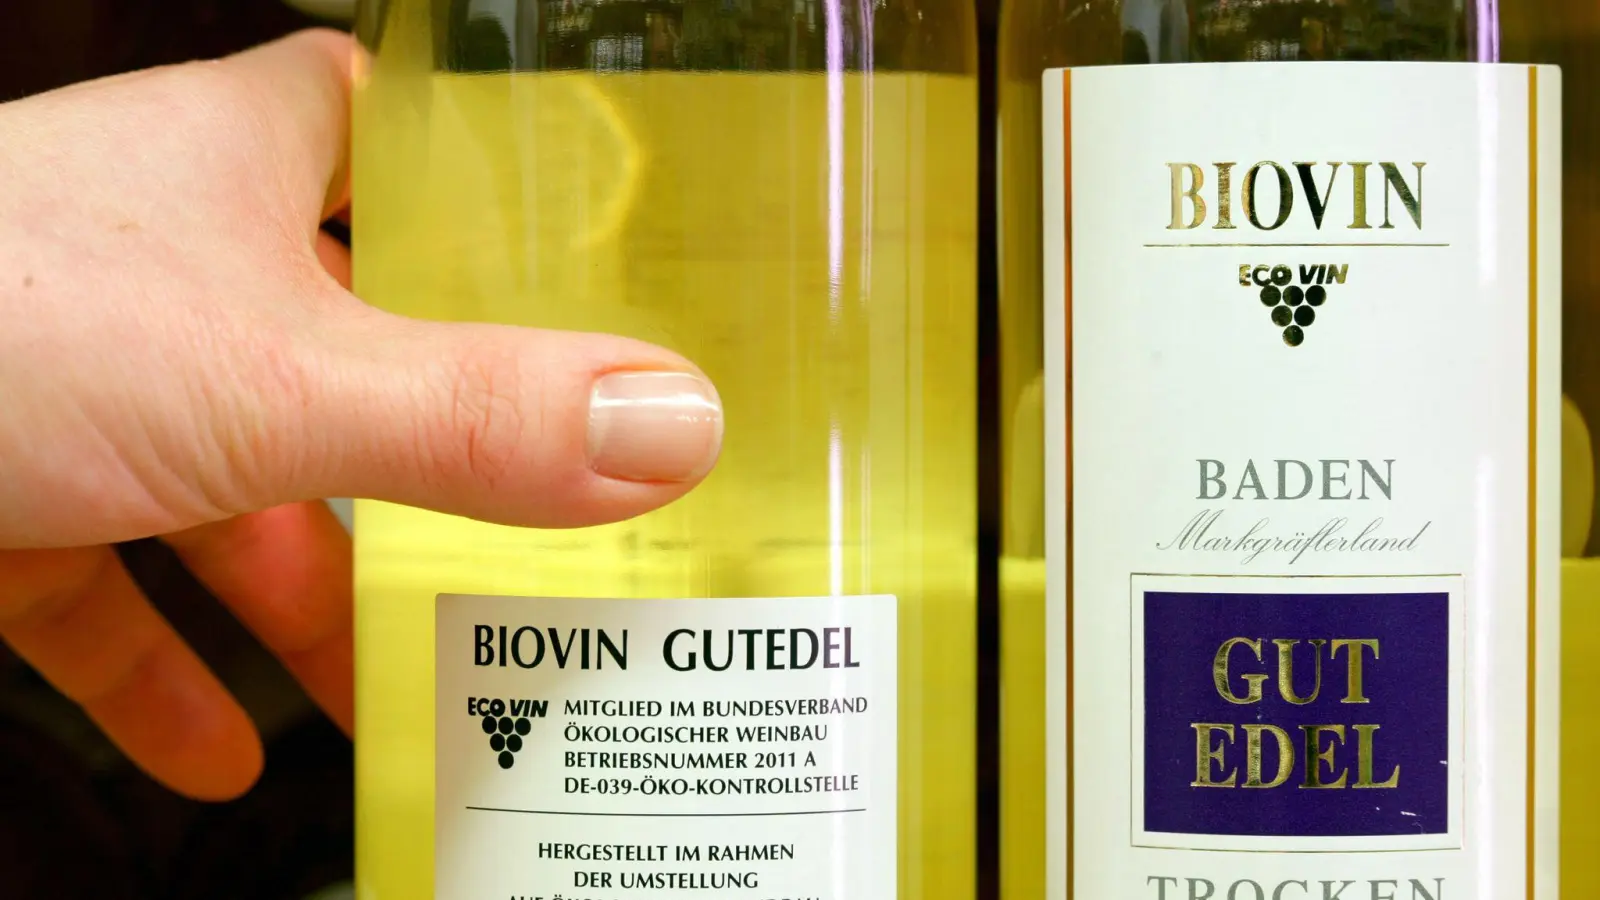 Die Weißwein-Marke „Biovin“ trägt das Siegel des Bundesverbandes Ökologischer Weinbau e.V., kurz „Ecovin“. (Foto: picture alliance / dpa)